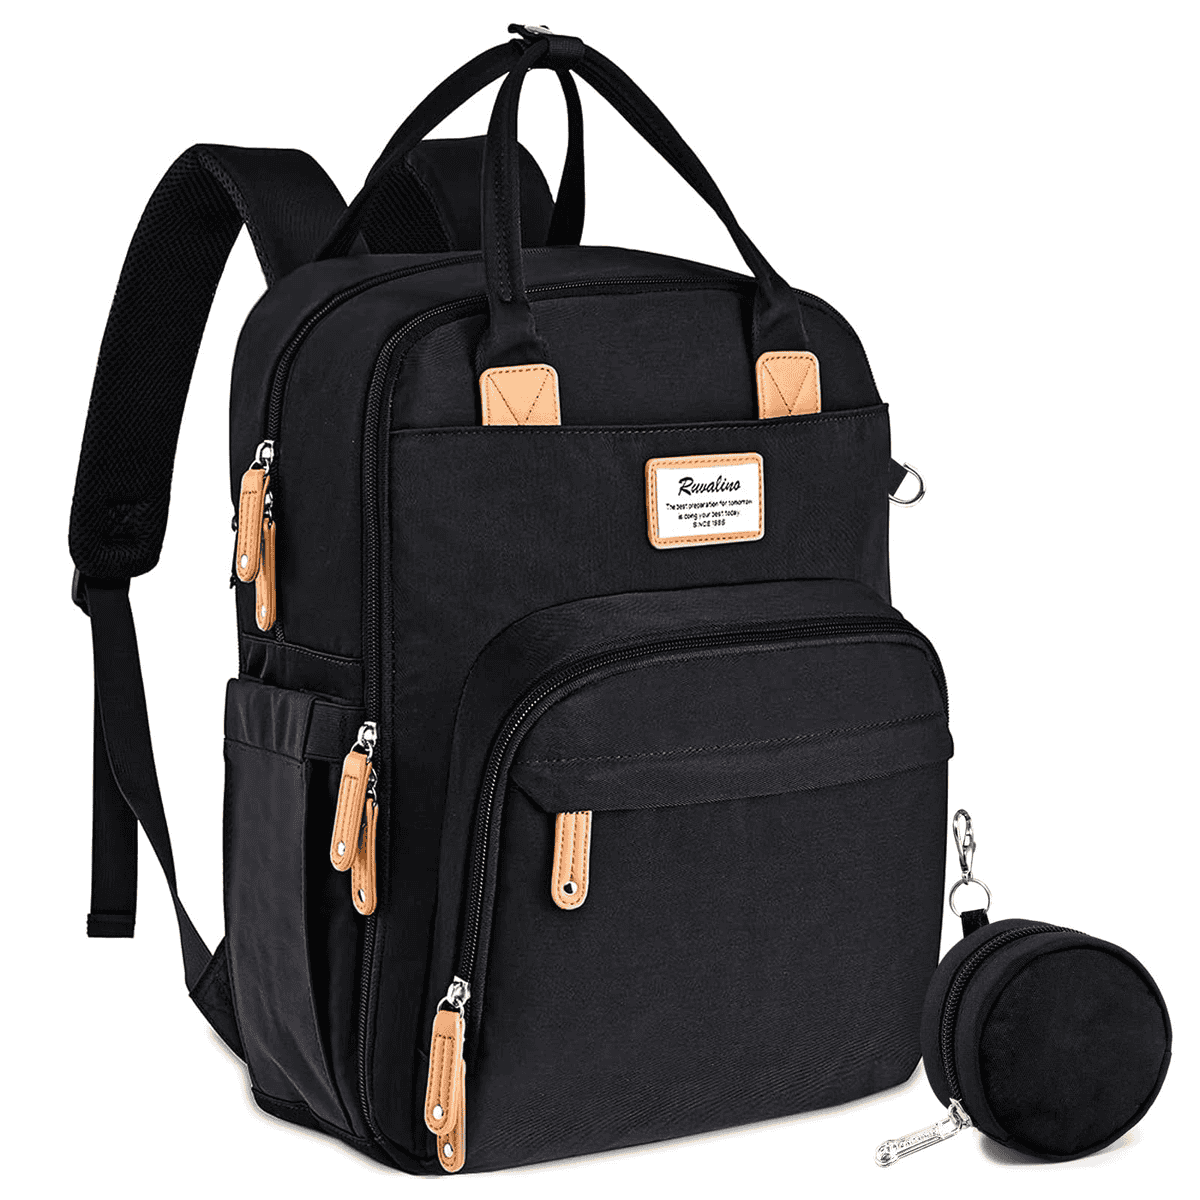 Black Ruvalino diaper bag backpack